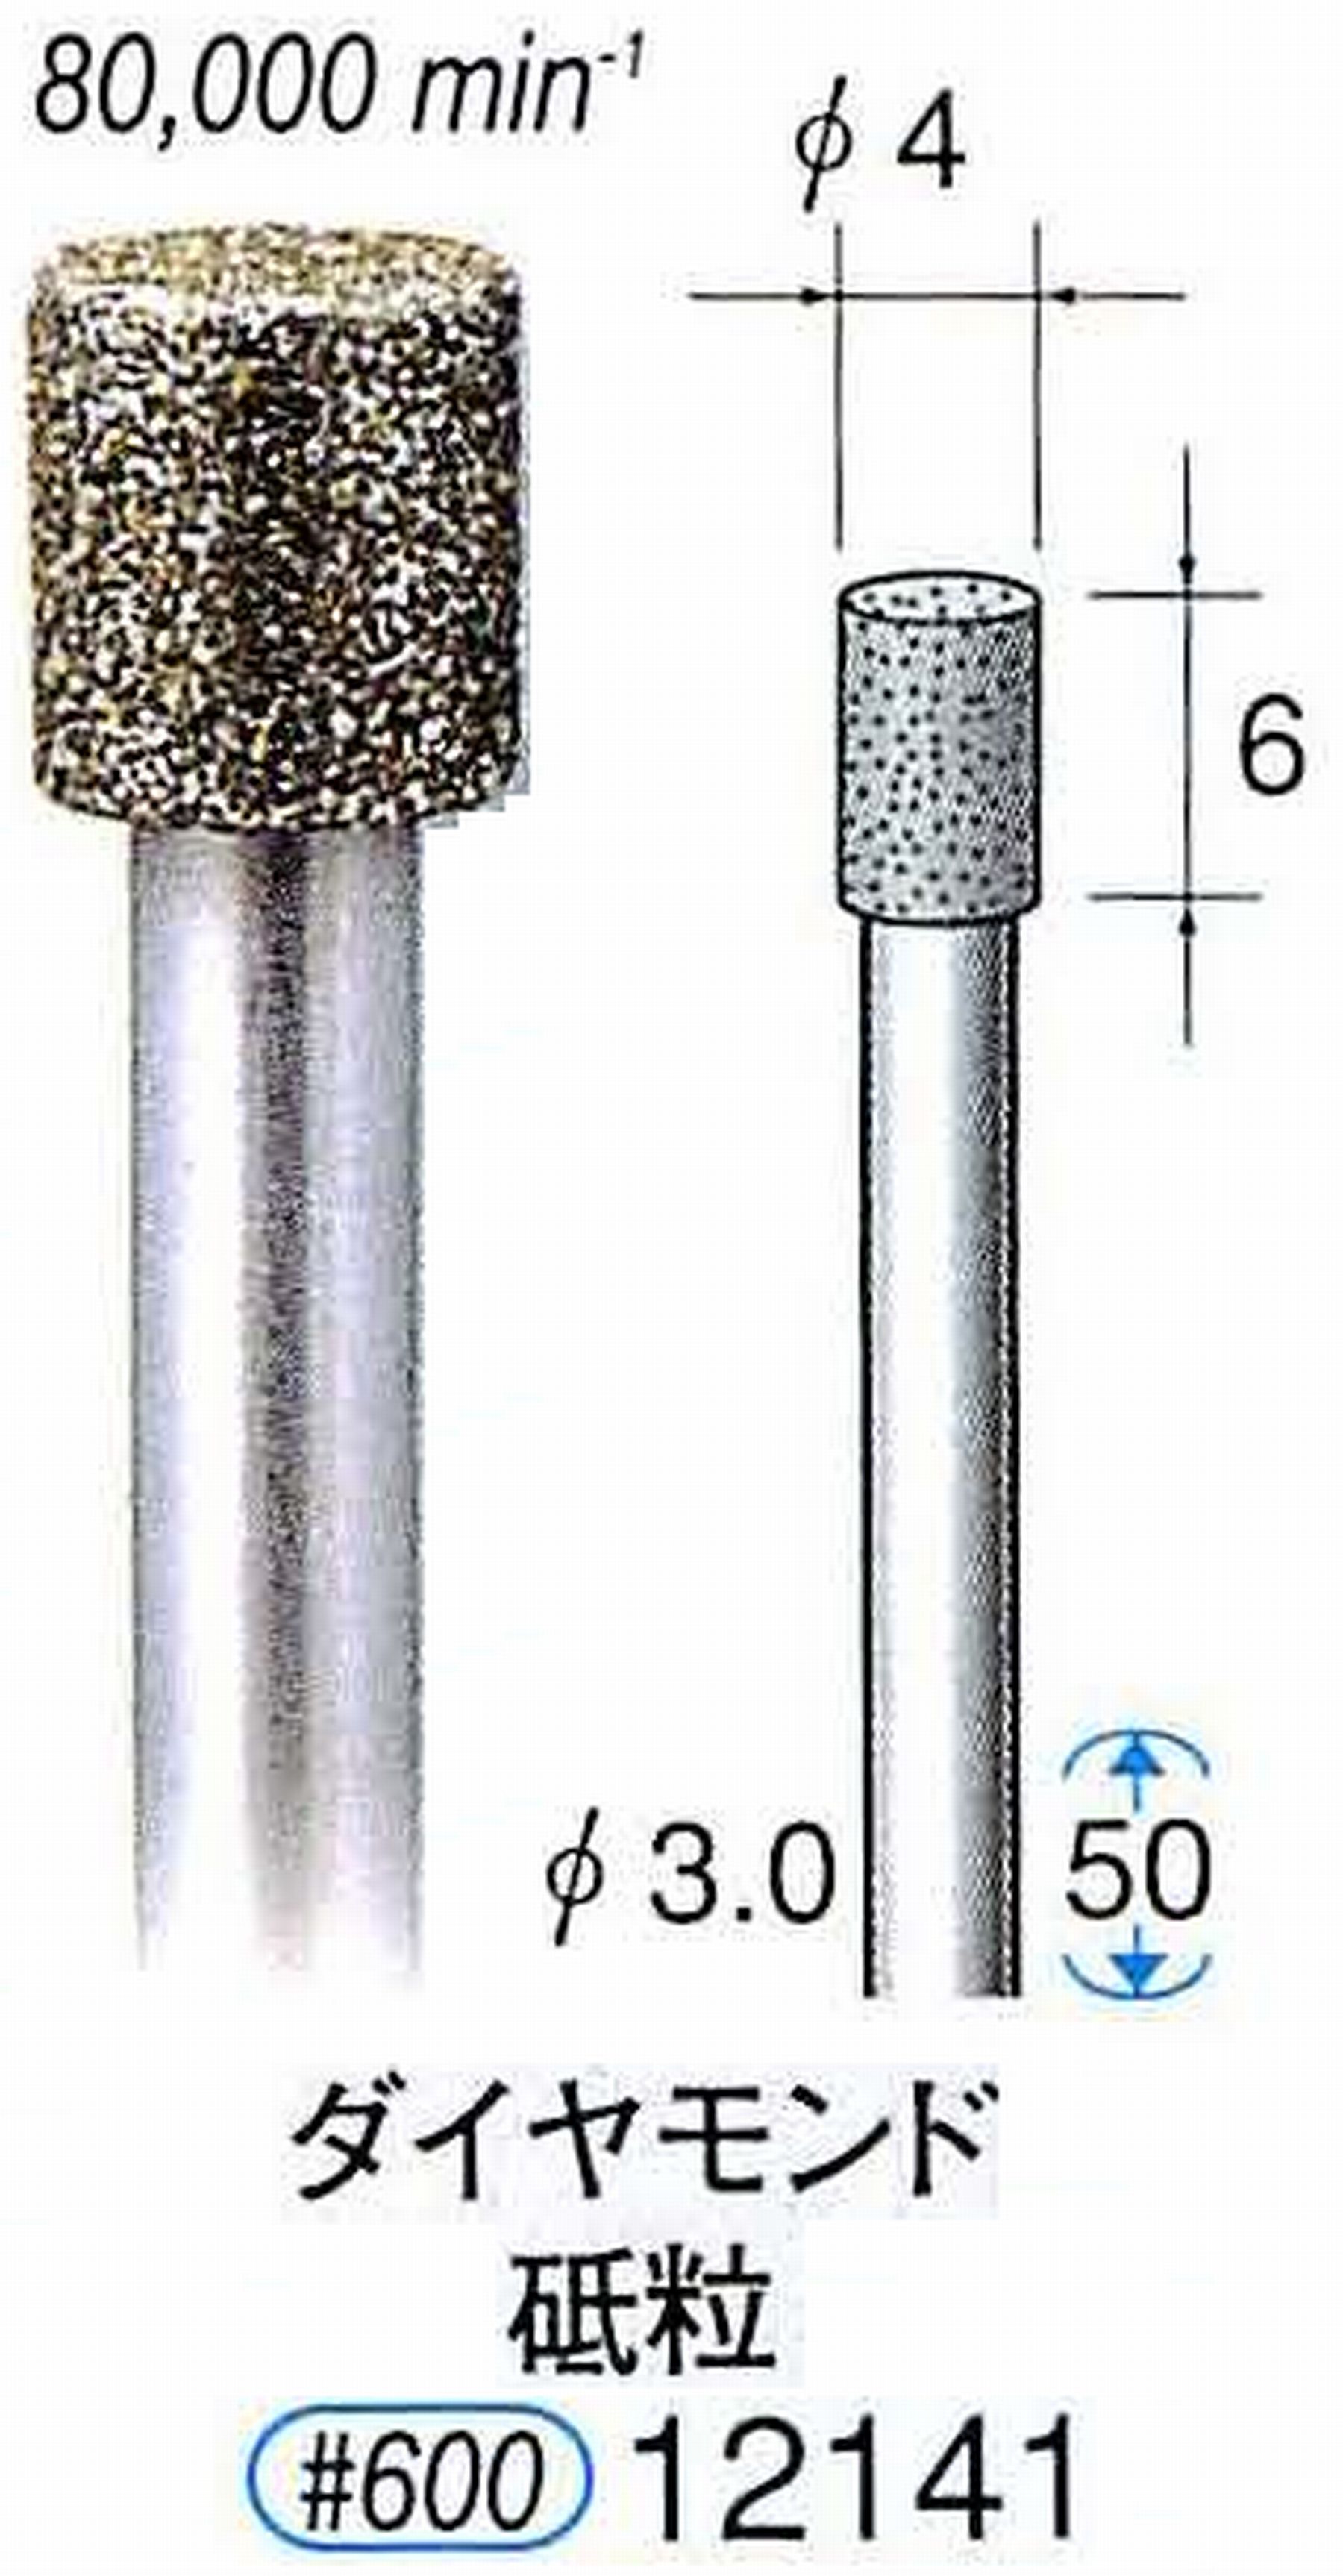 ナカニシ/NAKANISHI 電着ダイヤモンド ダイヤモンド砥粒 軸径(シャンク)φ3.0mm 12141